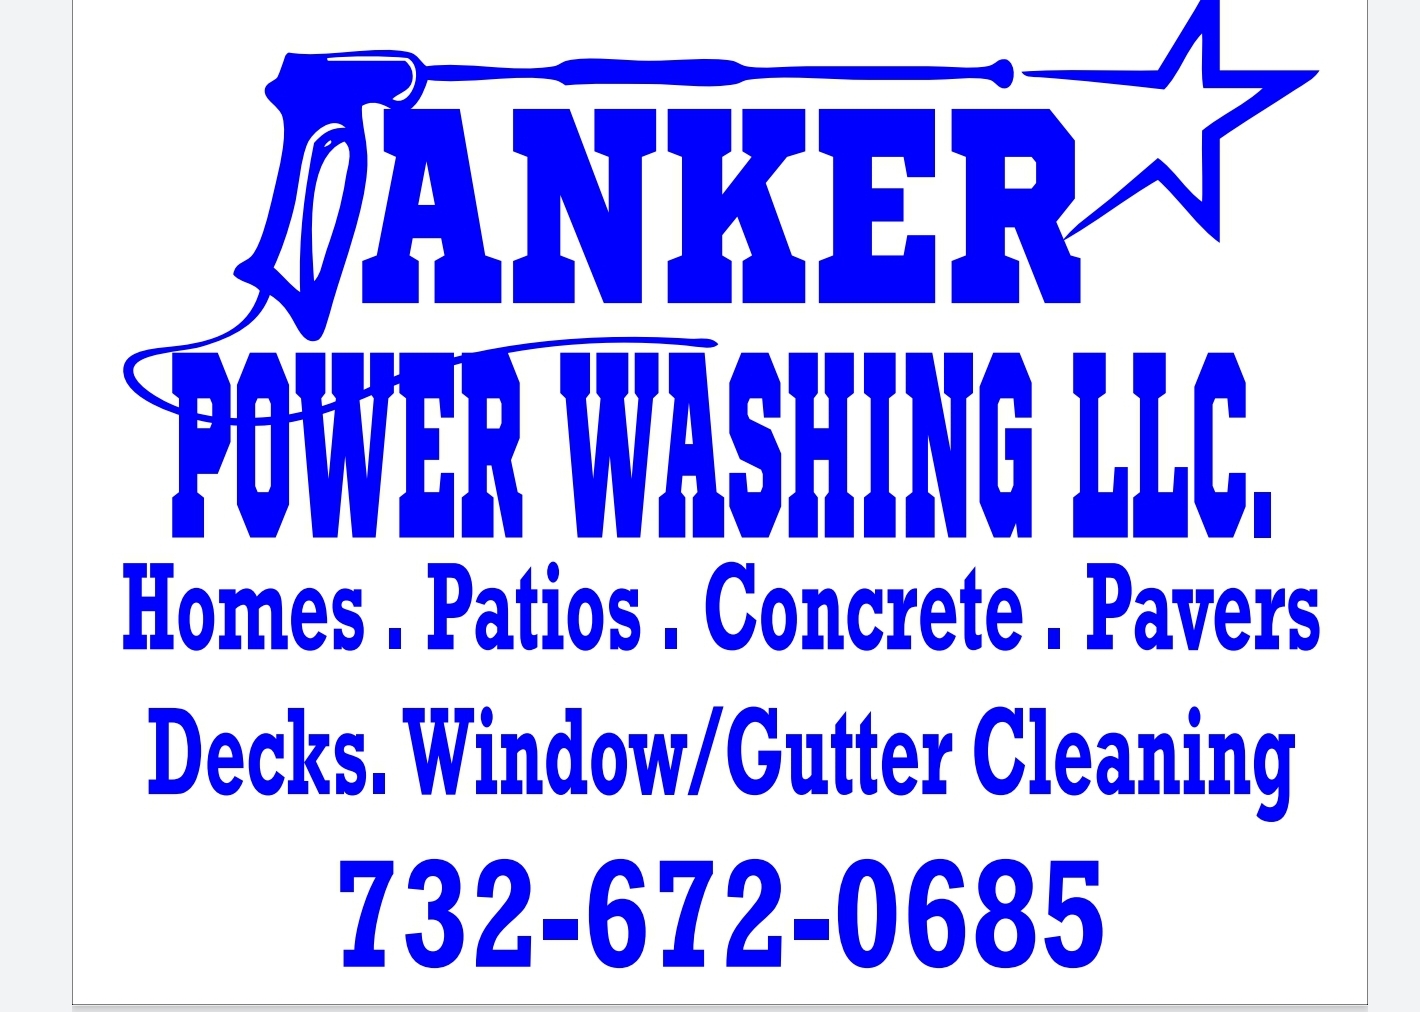 Anker Powerwashing